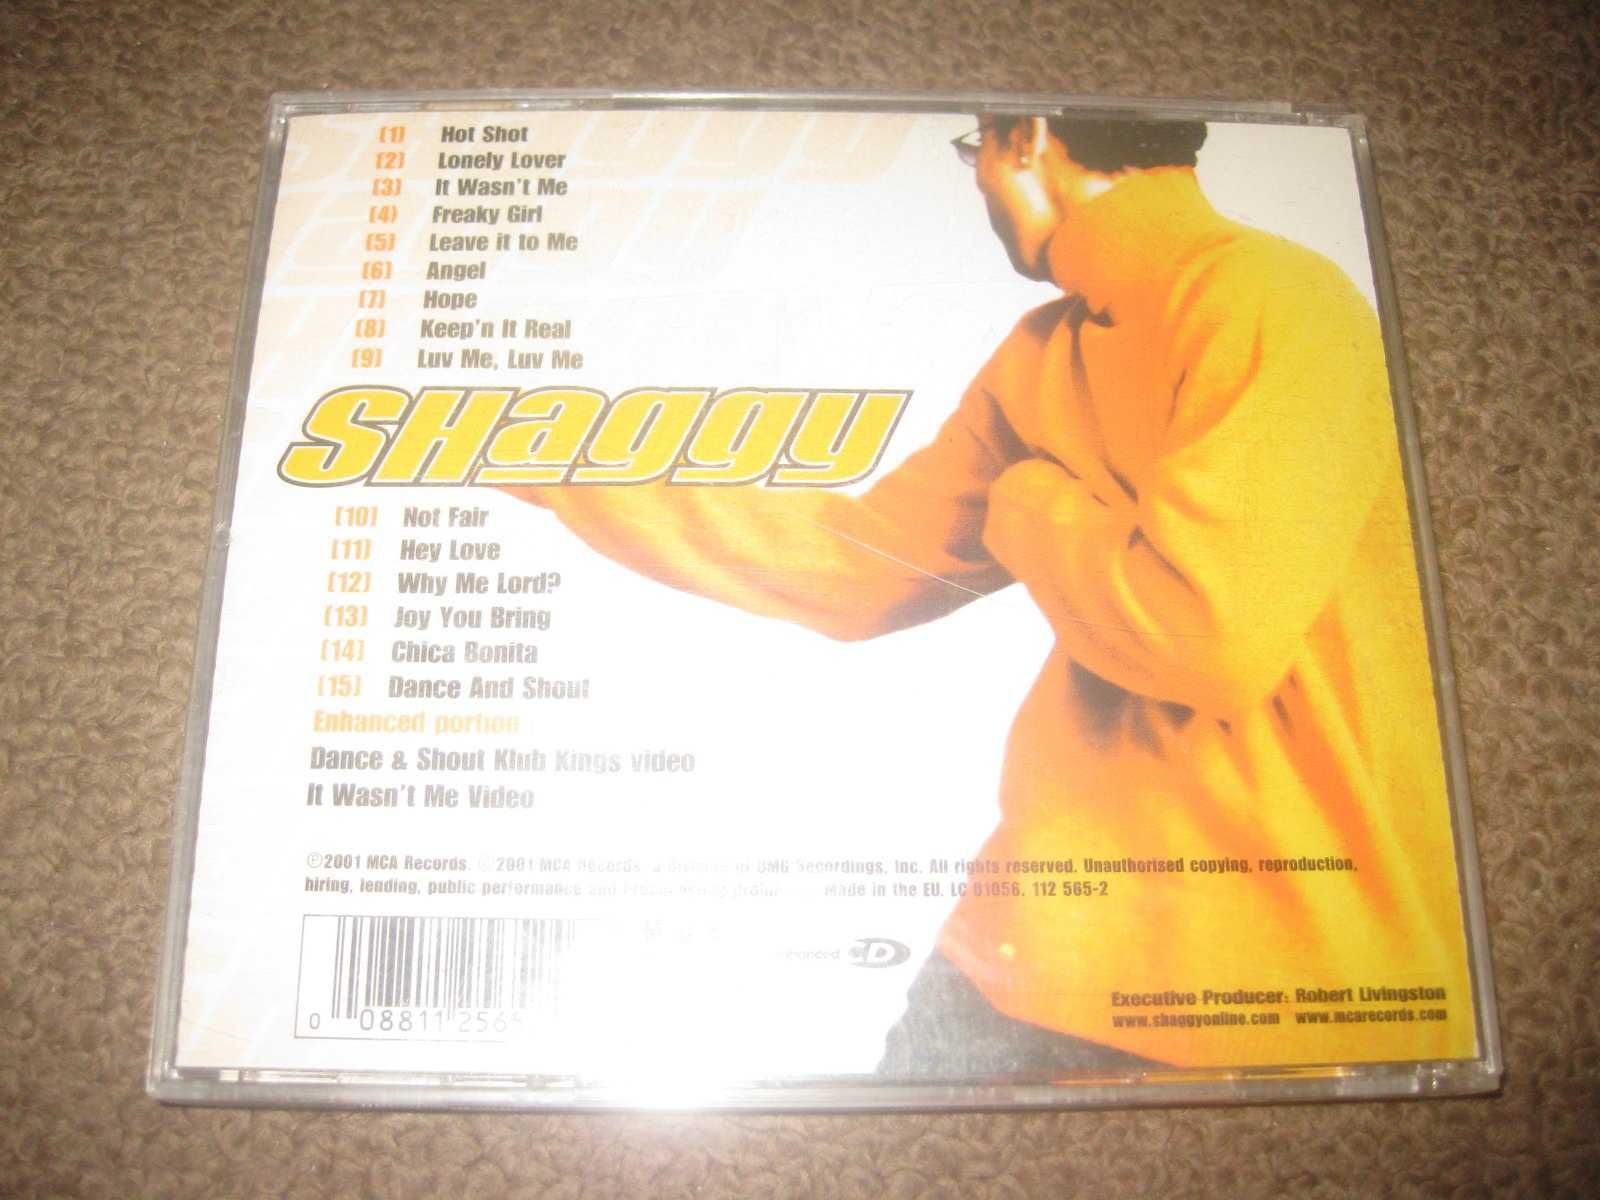 CD do Shaggy "Hot Shot" Portes Grátis!